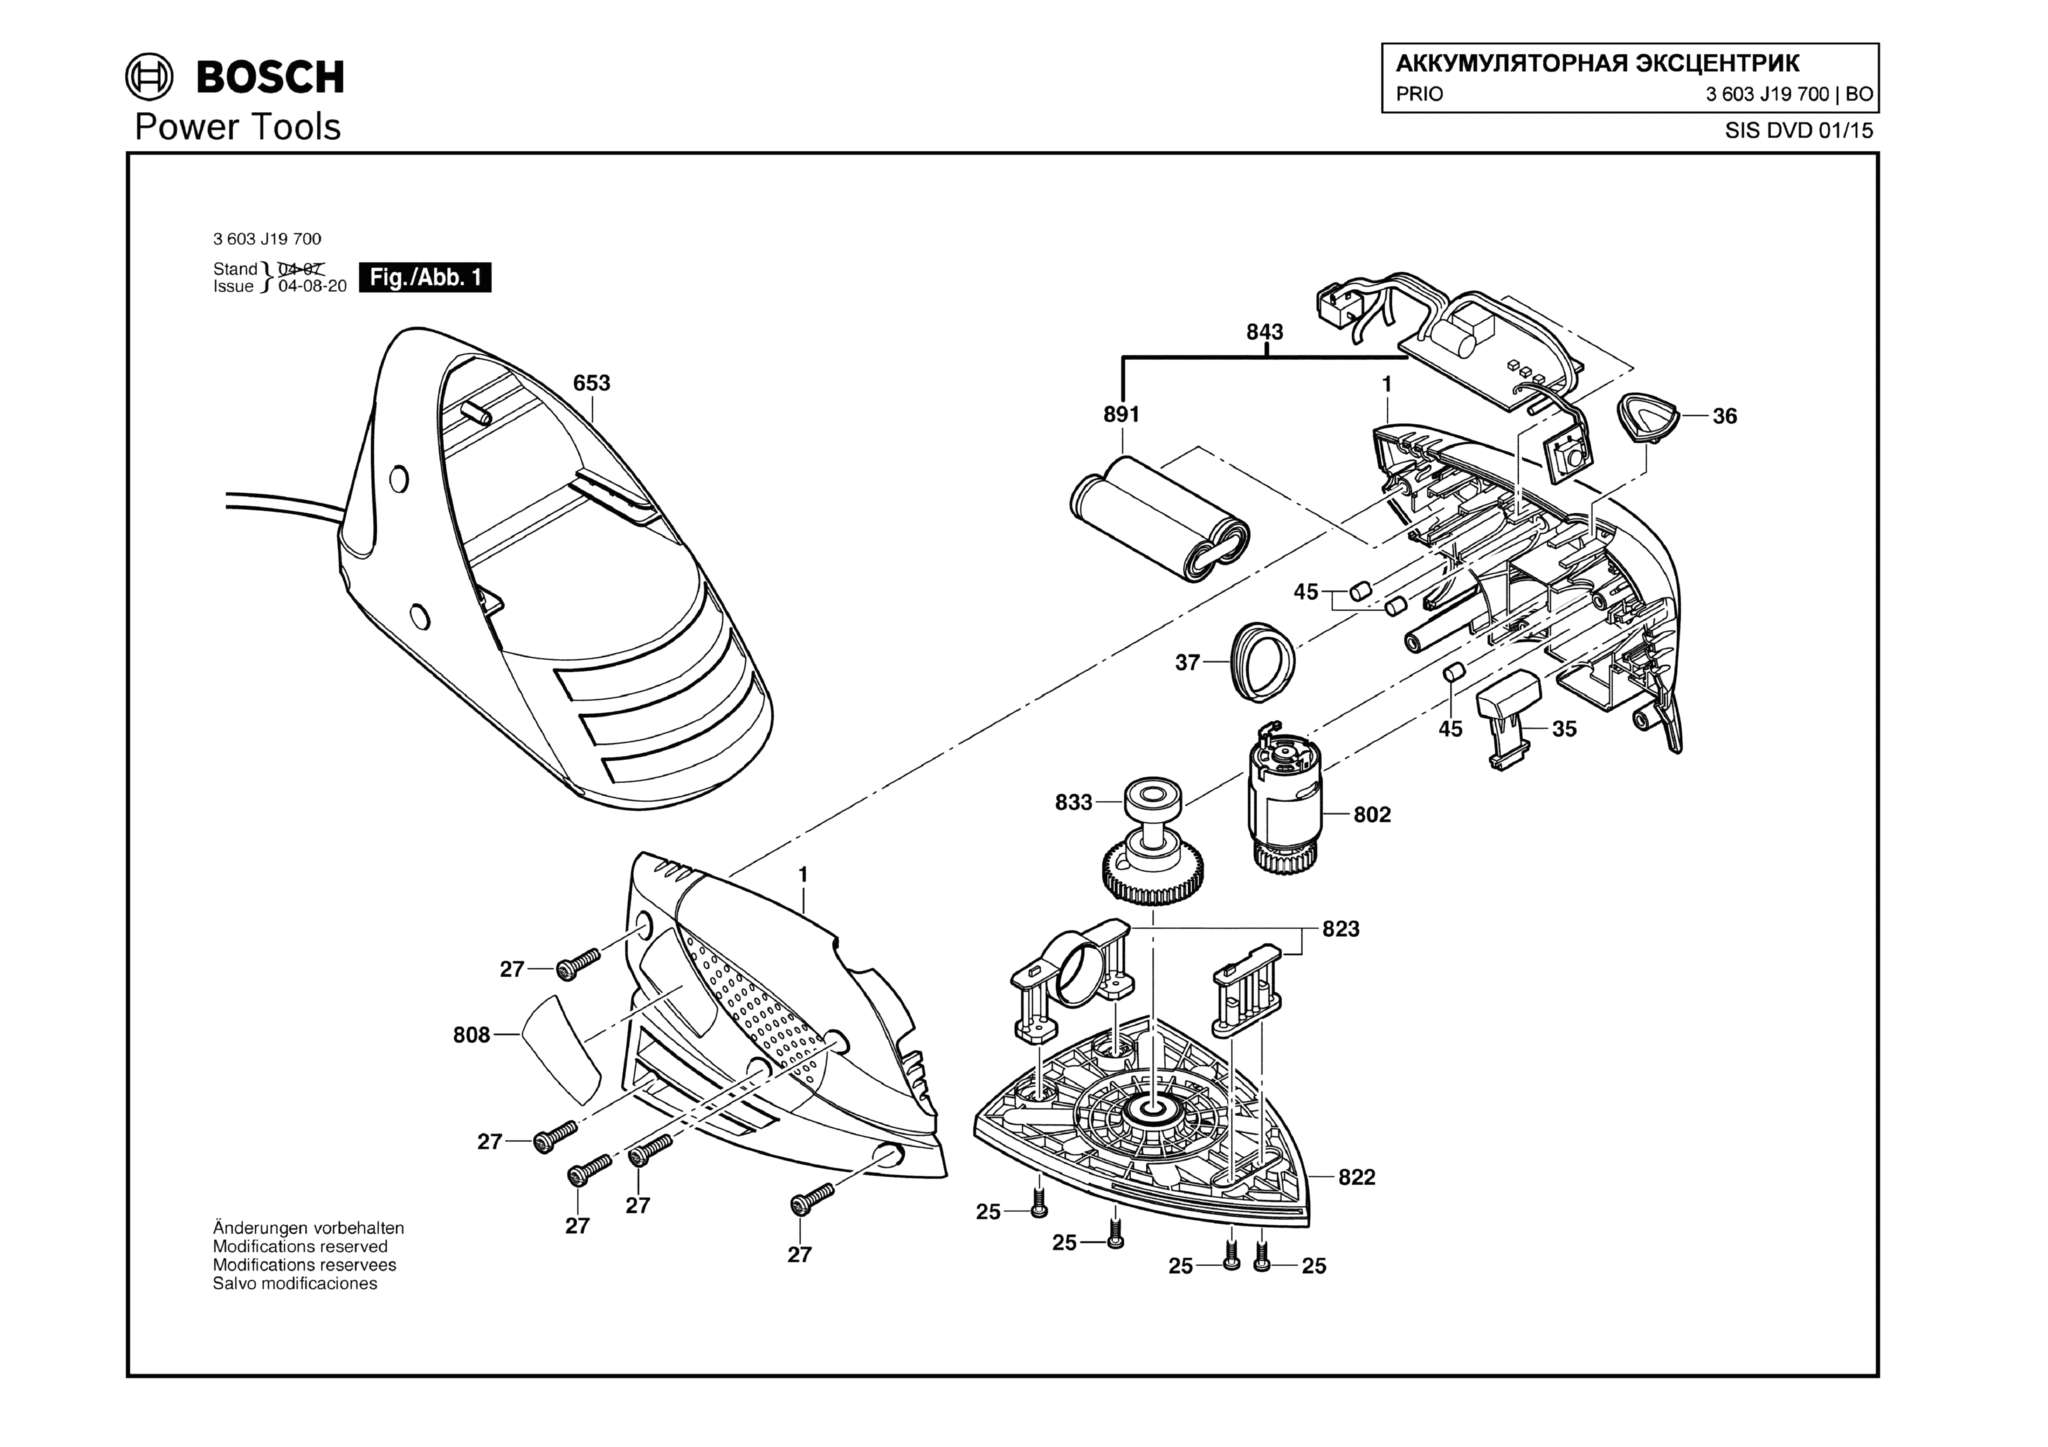 Запчасти, схема и деталировка Bosch PRIO (ТИП 3603J19700)